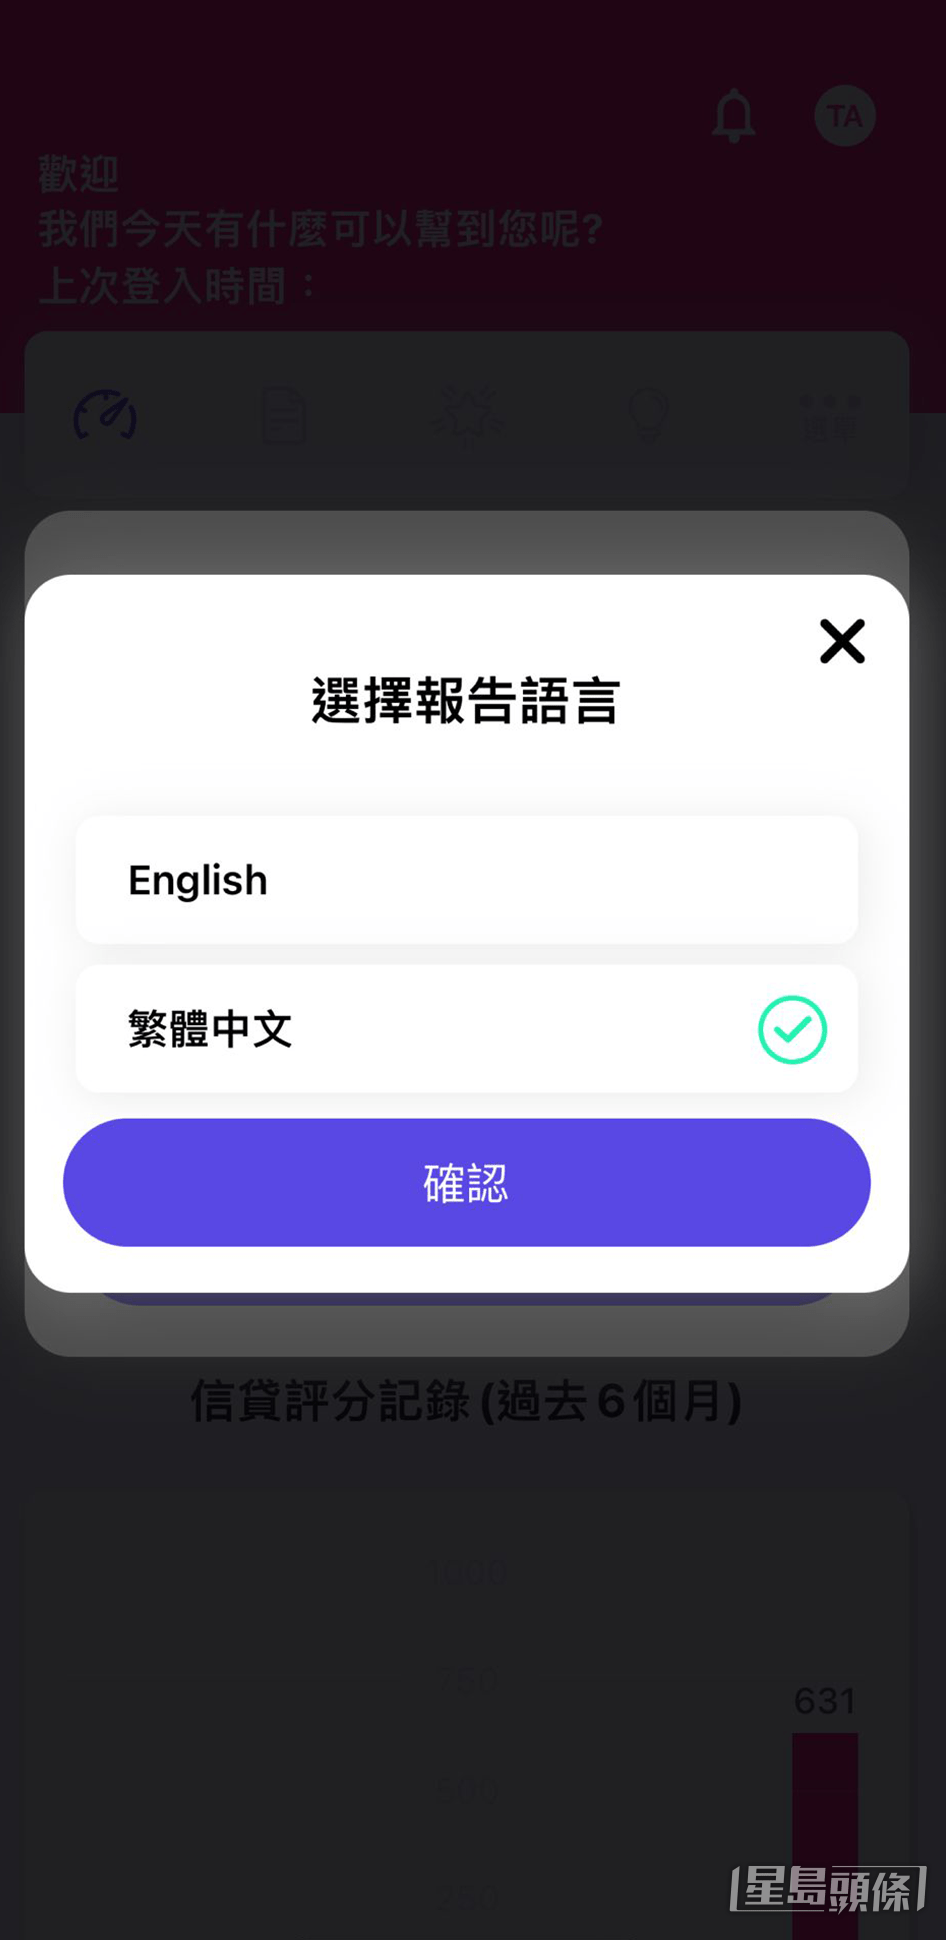 步骤 2：选择报告语言，支援“繁体中文版”或“英文版”两种语言版本